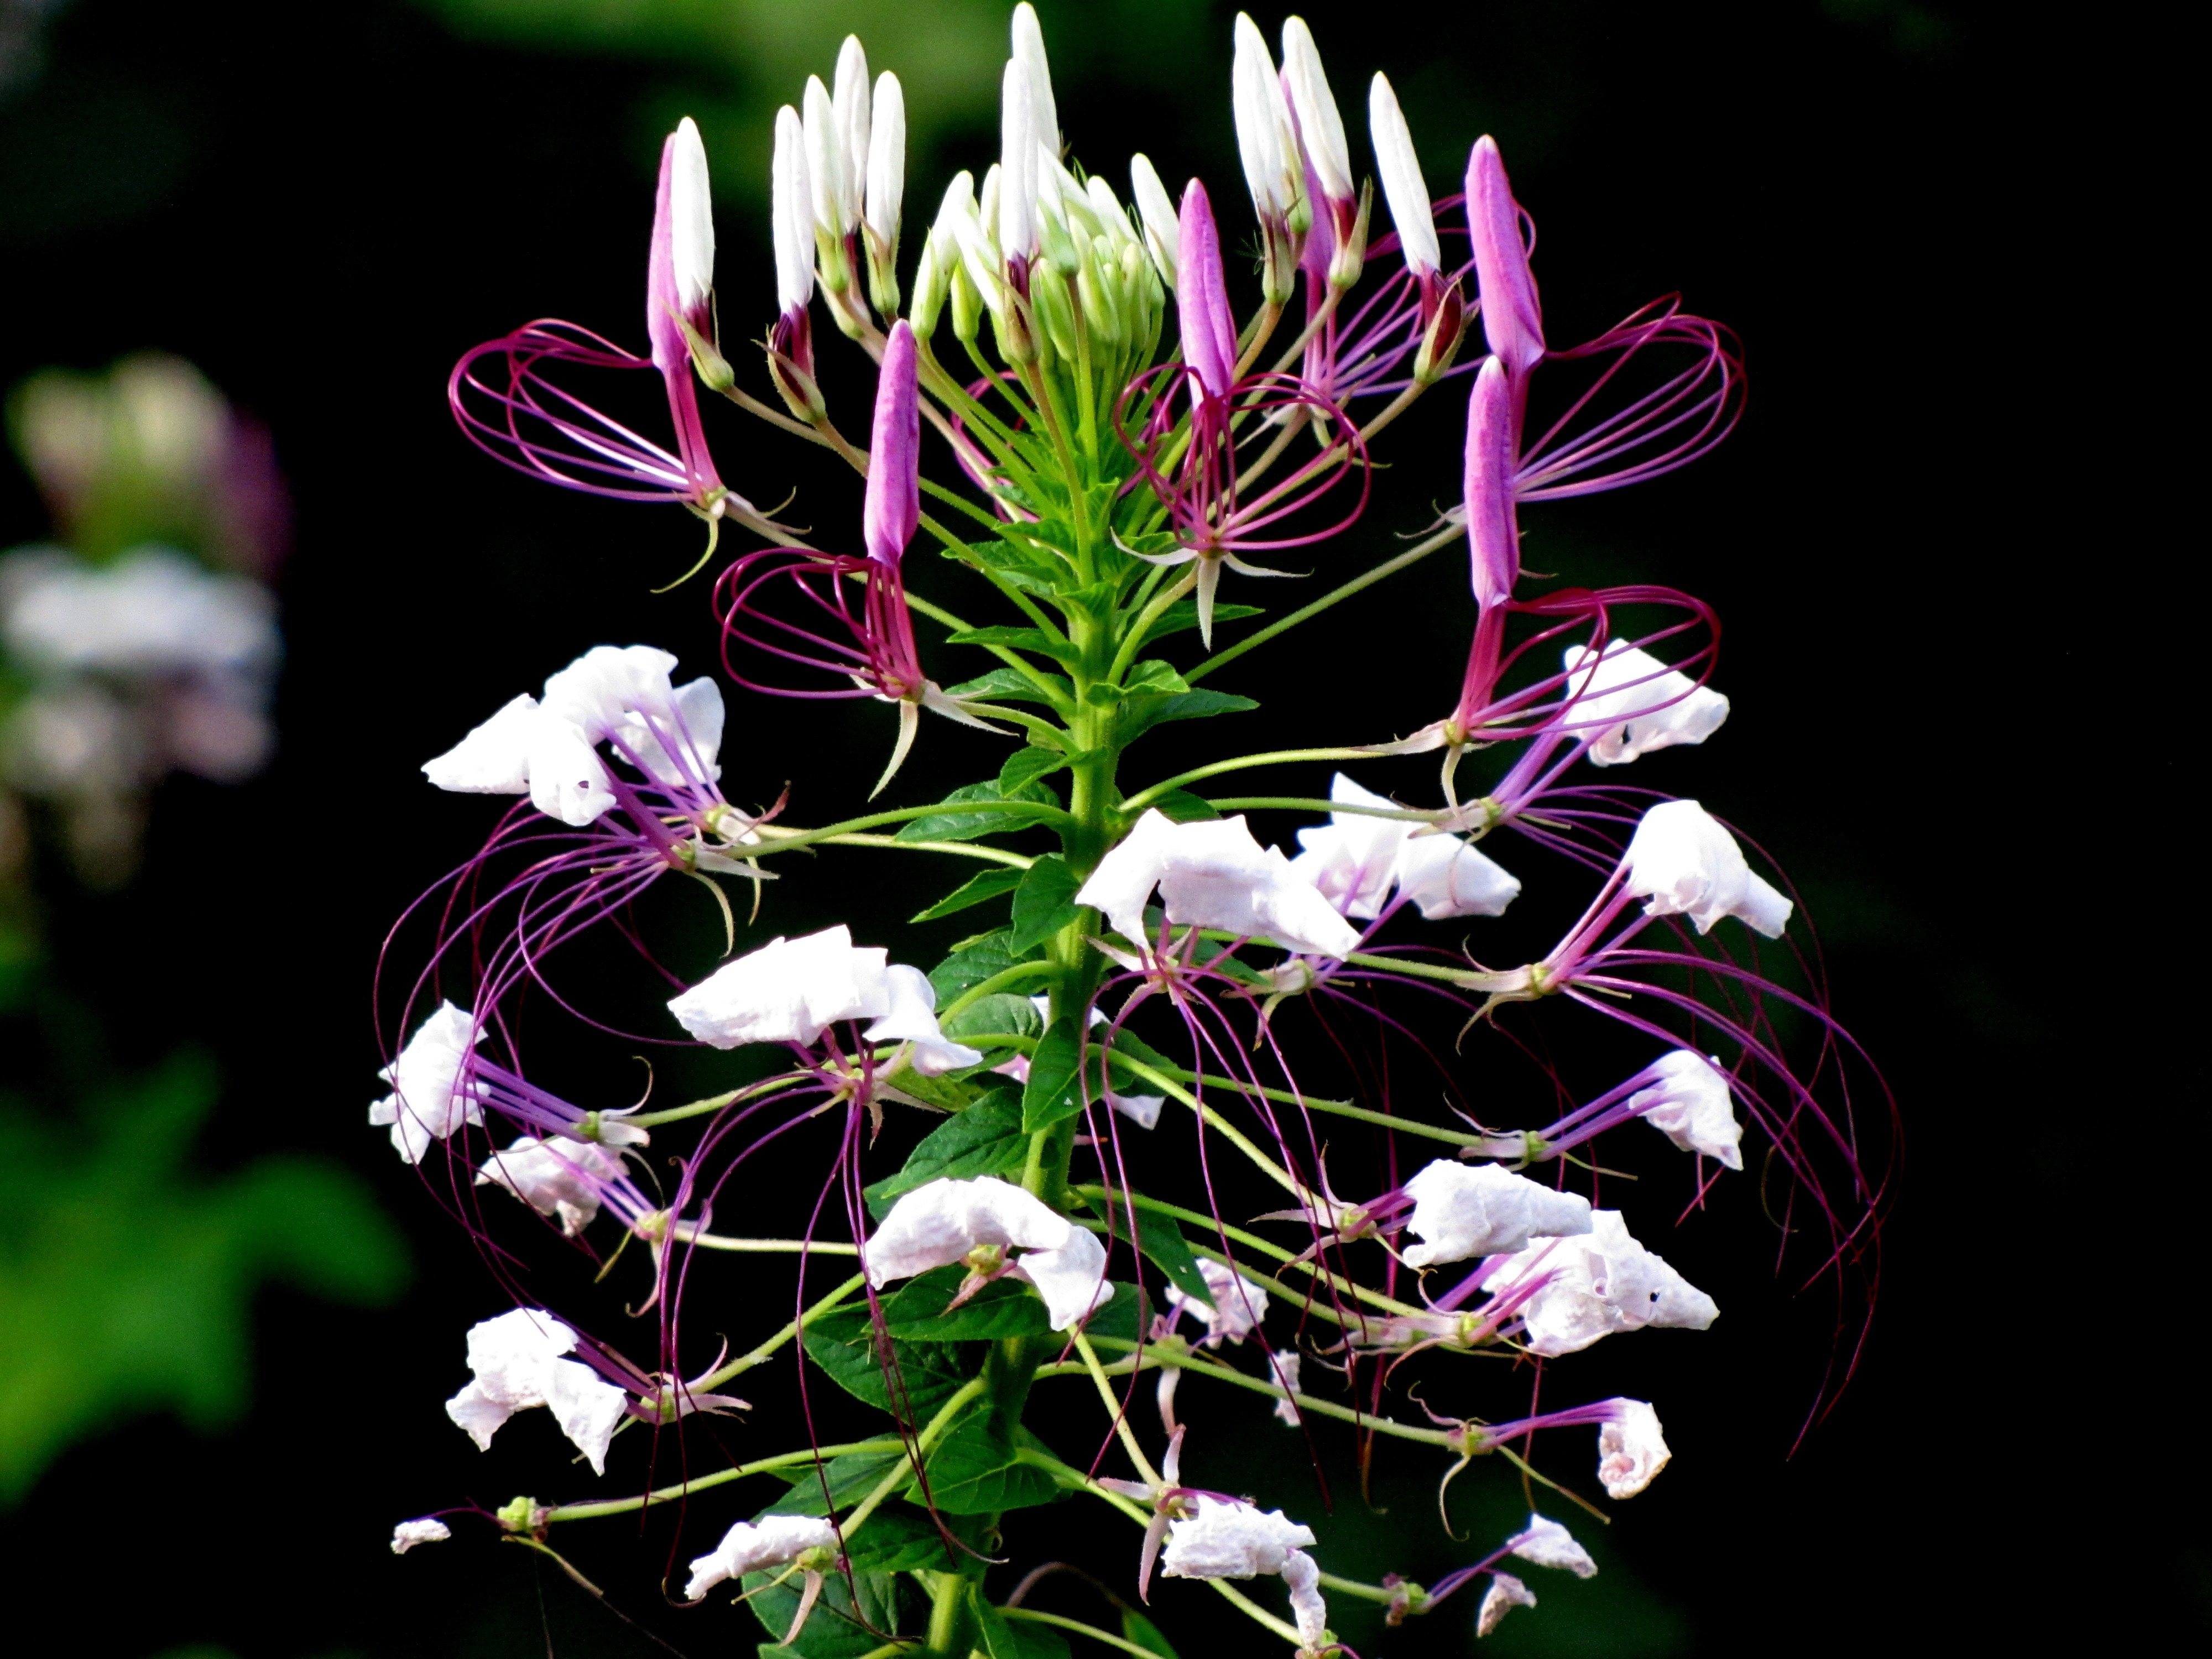 Spider Flower, Cleome Hassleriana, flower, purple